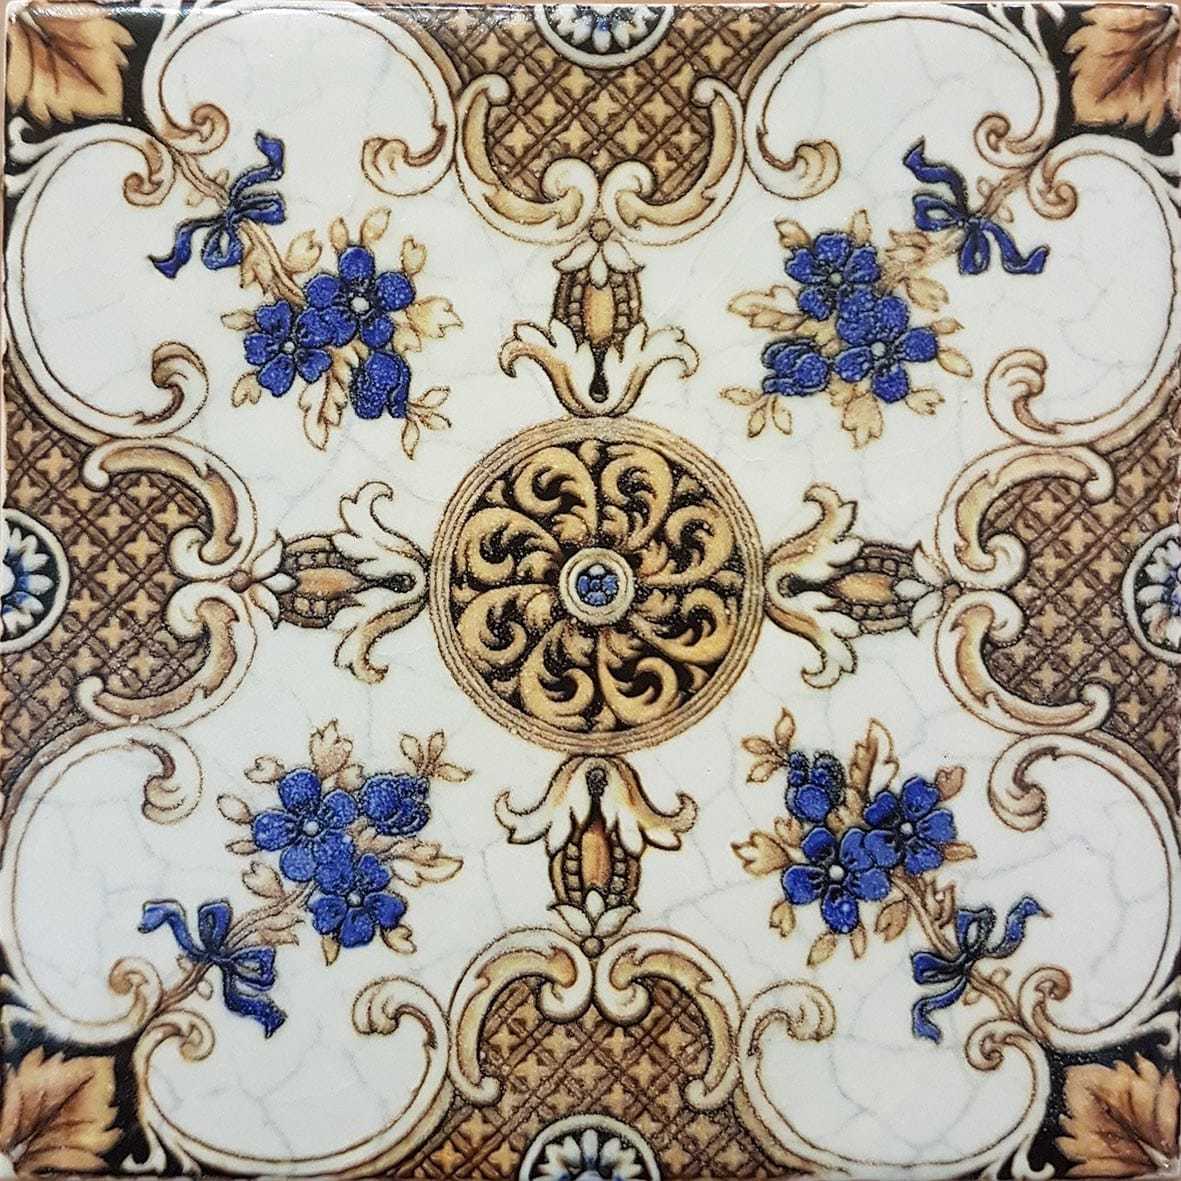 Victorian Minton Tile